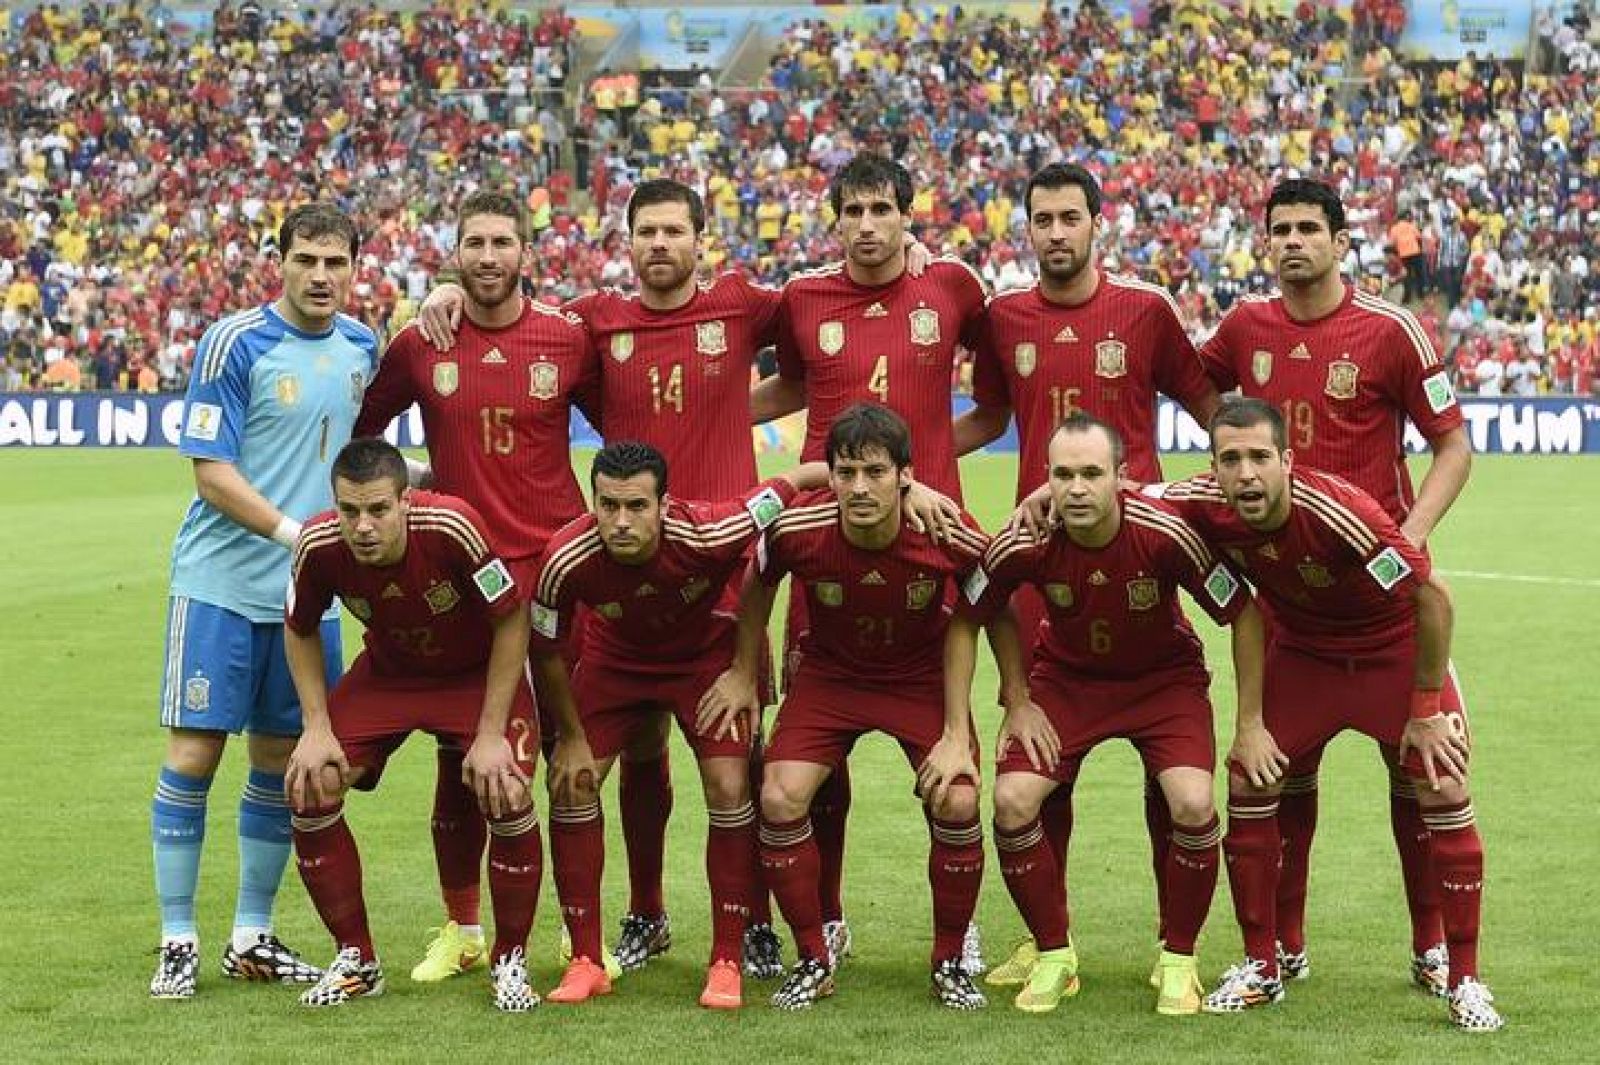 Mundial 2014: Los jugadores del España - analizados uno a uno